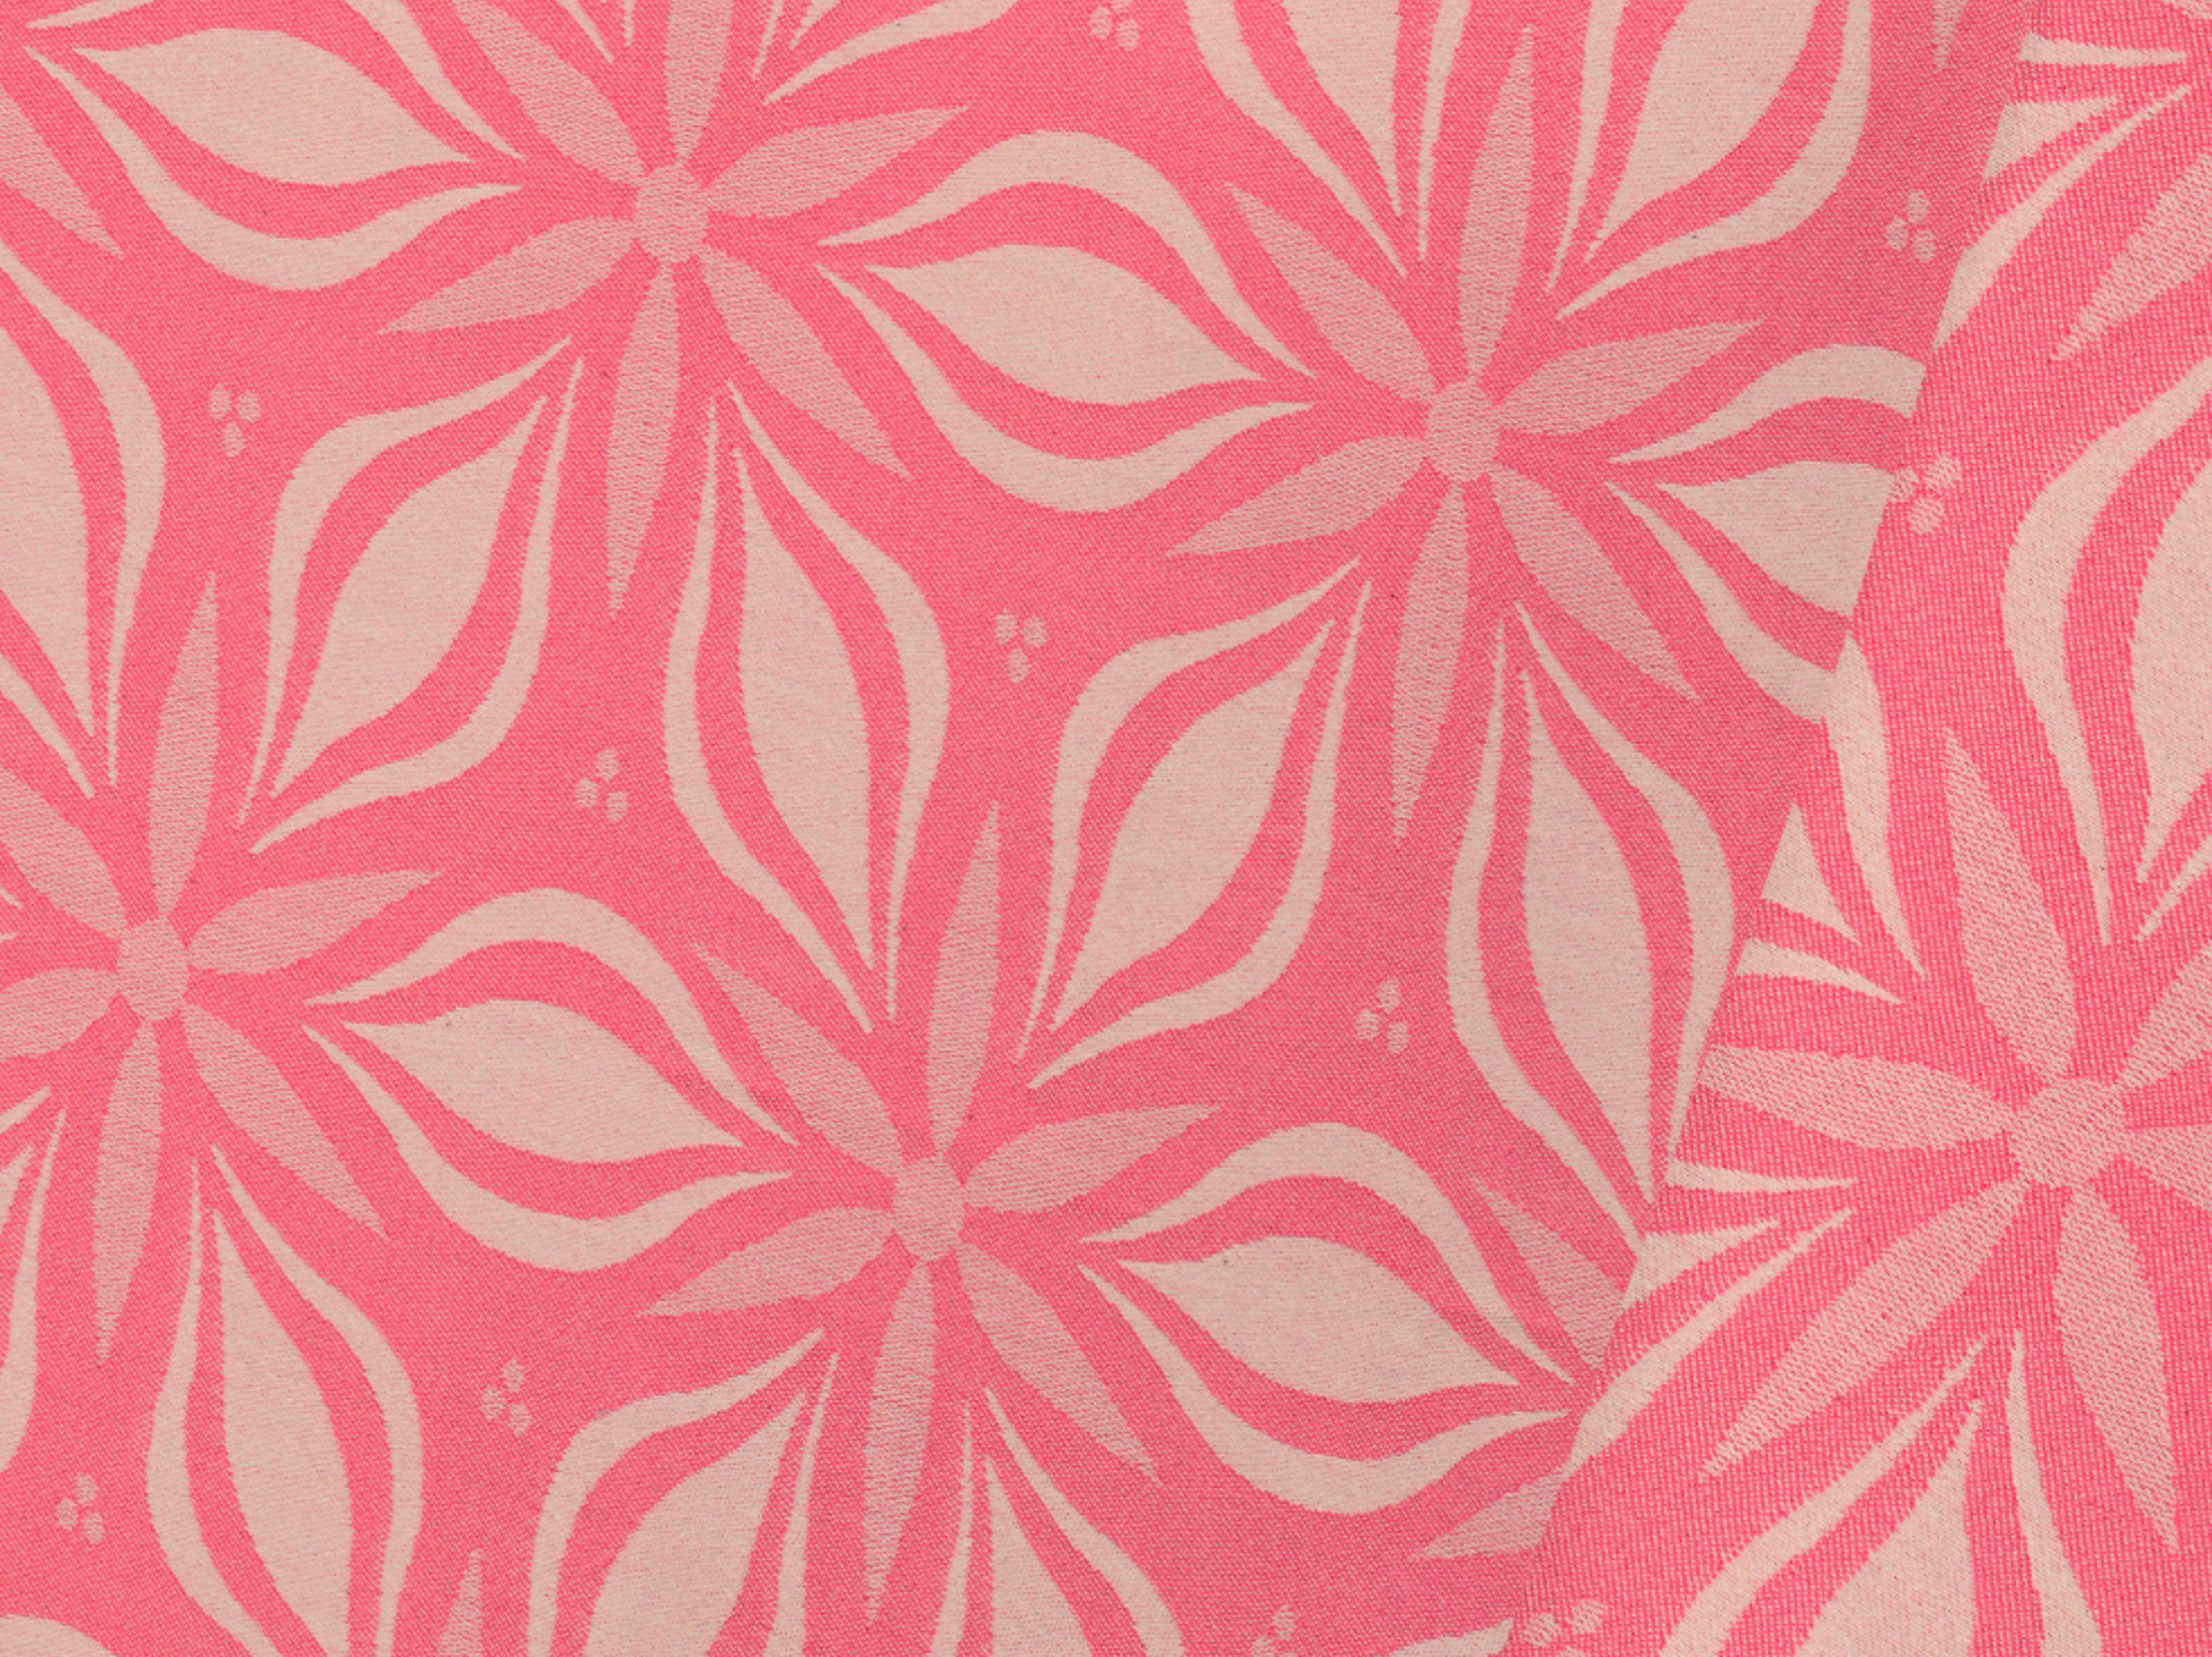 nachhaltig Floret, Tischdecke pink Adam Retro